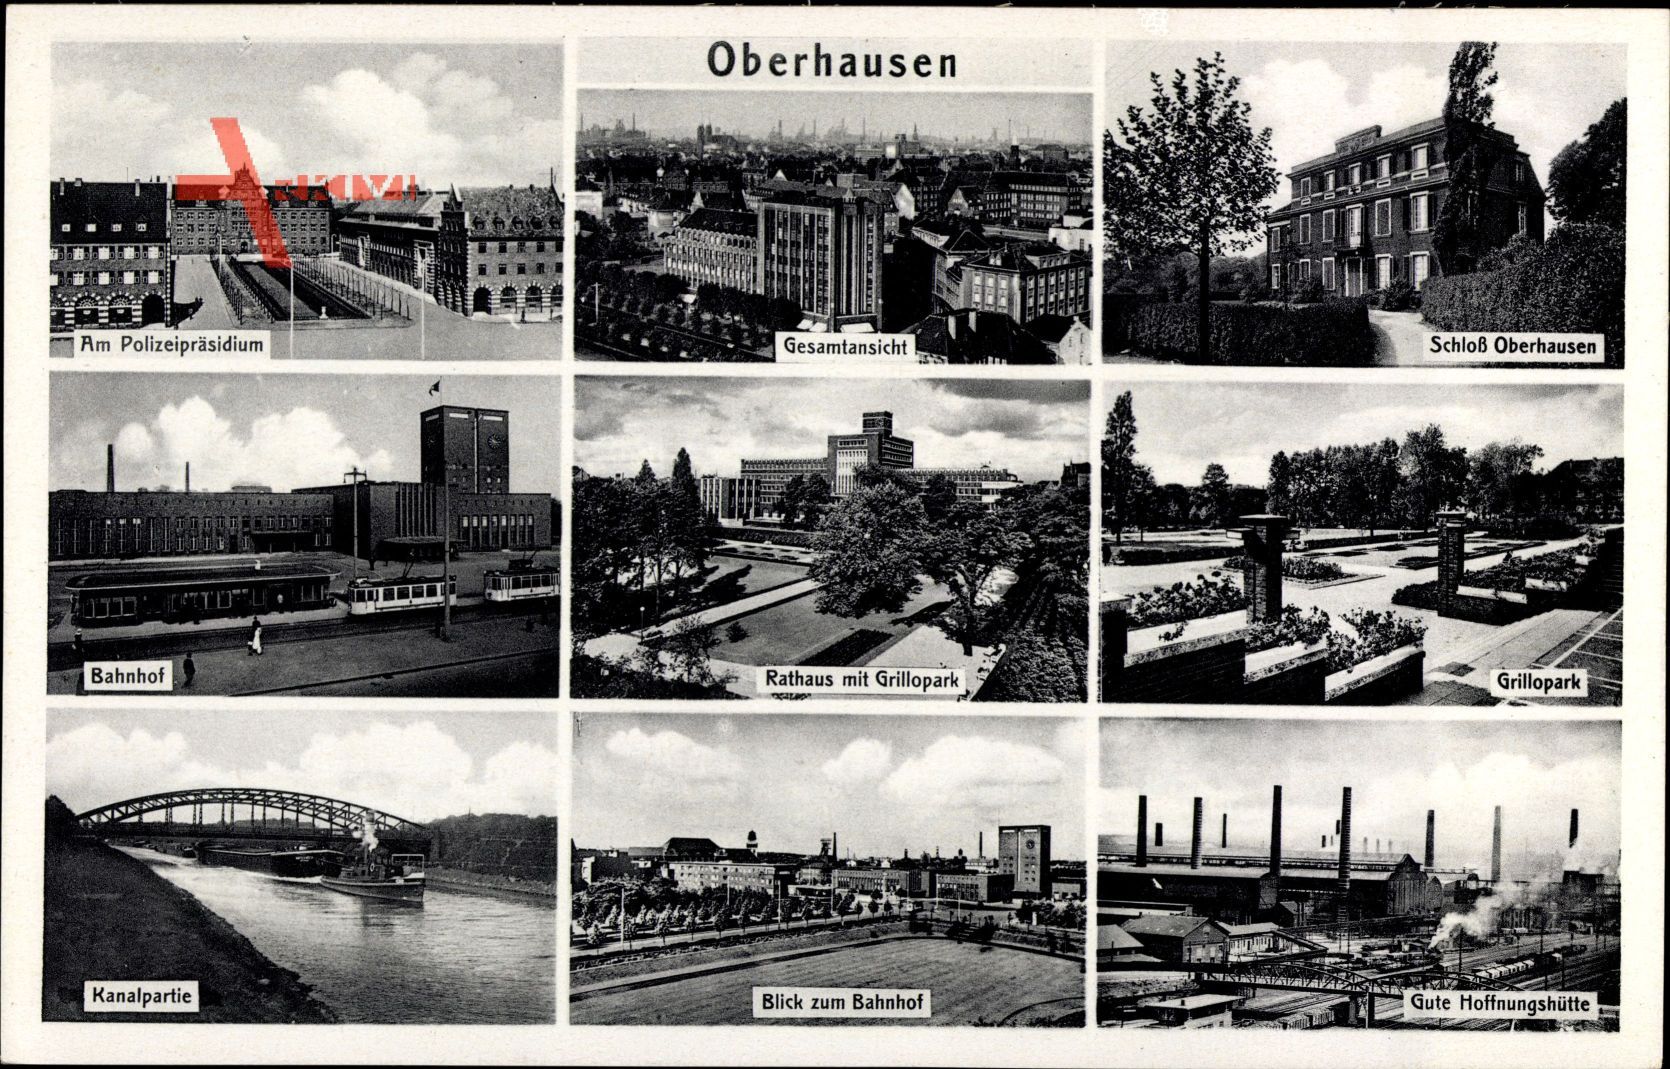 Oberhausen am Rhein, Polizeipräsidium, Bahnhof, Rathaus, Schloß, Grillopark